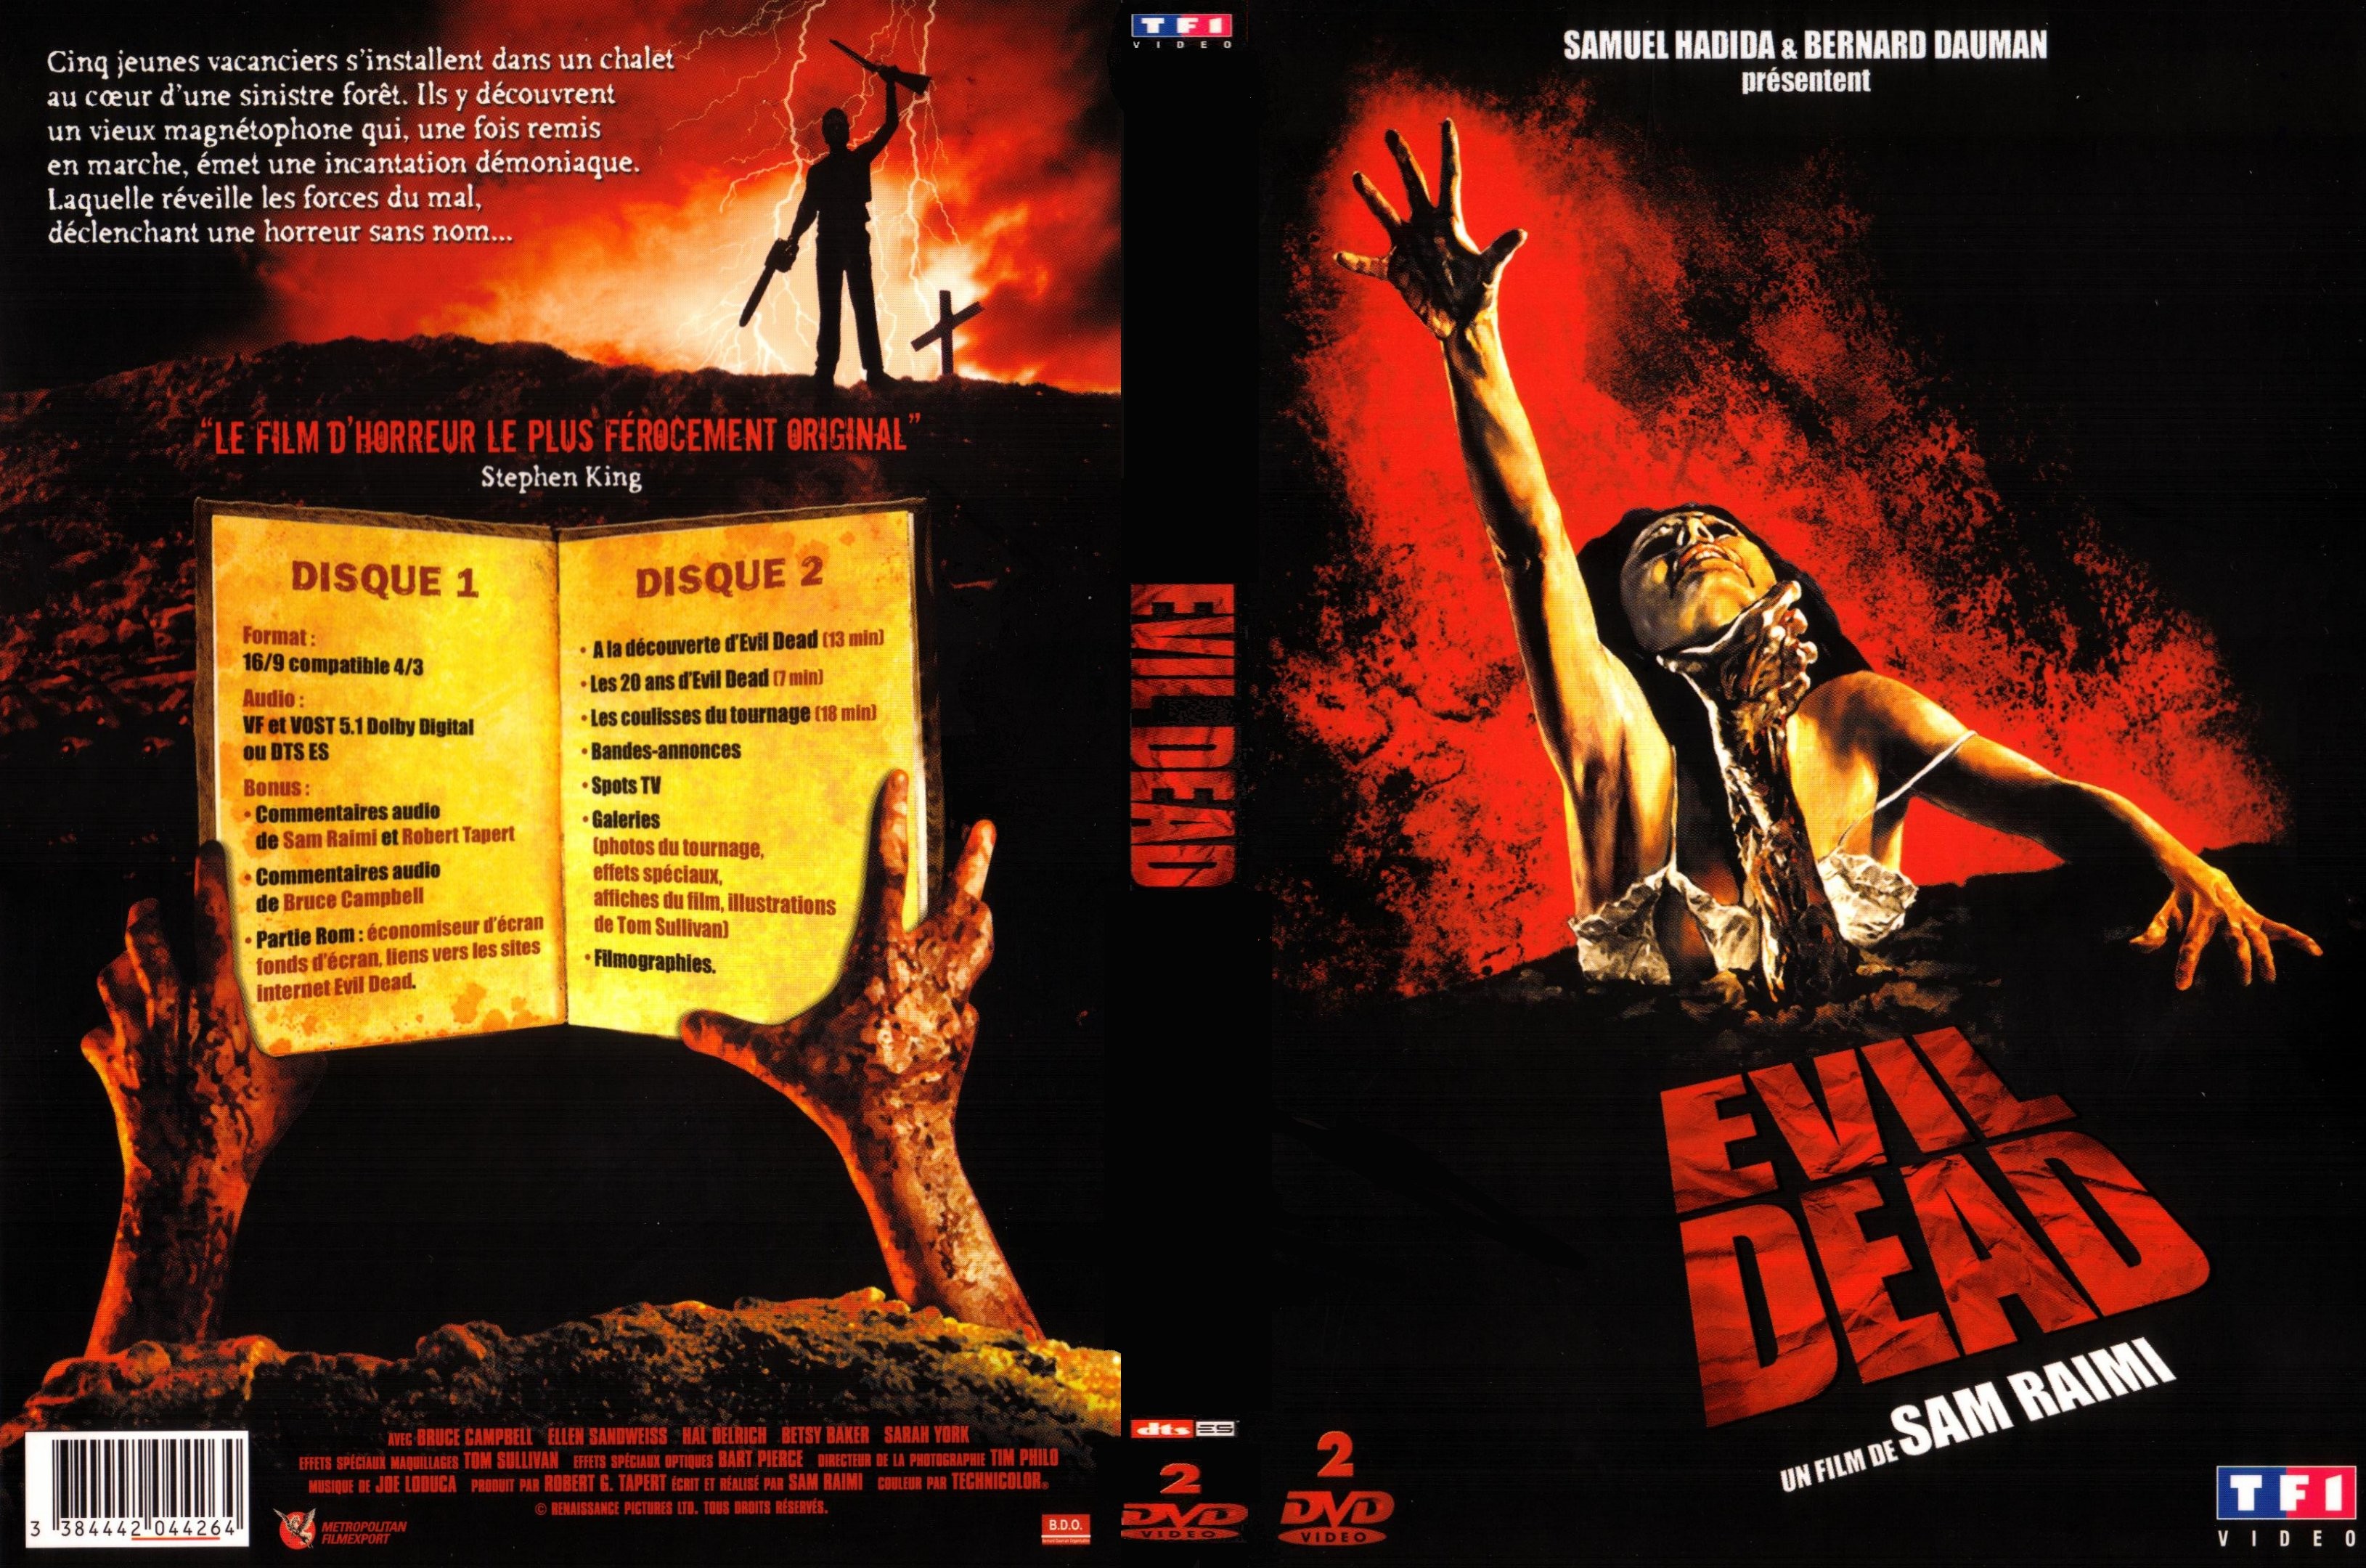 Jaquette DVD Evil dead